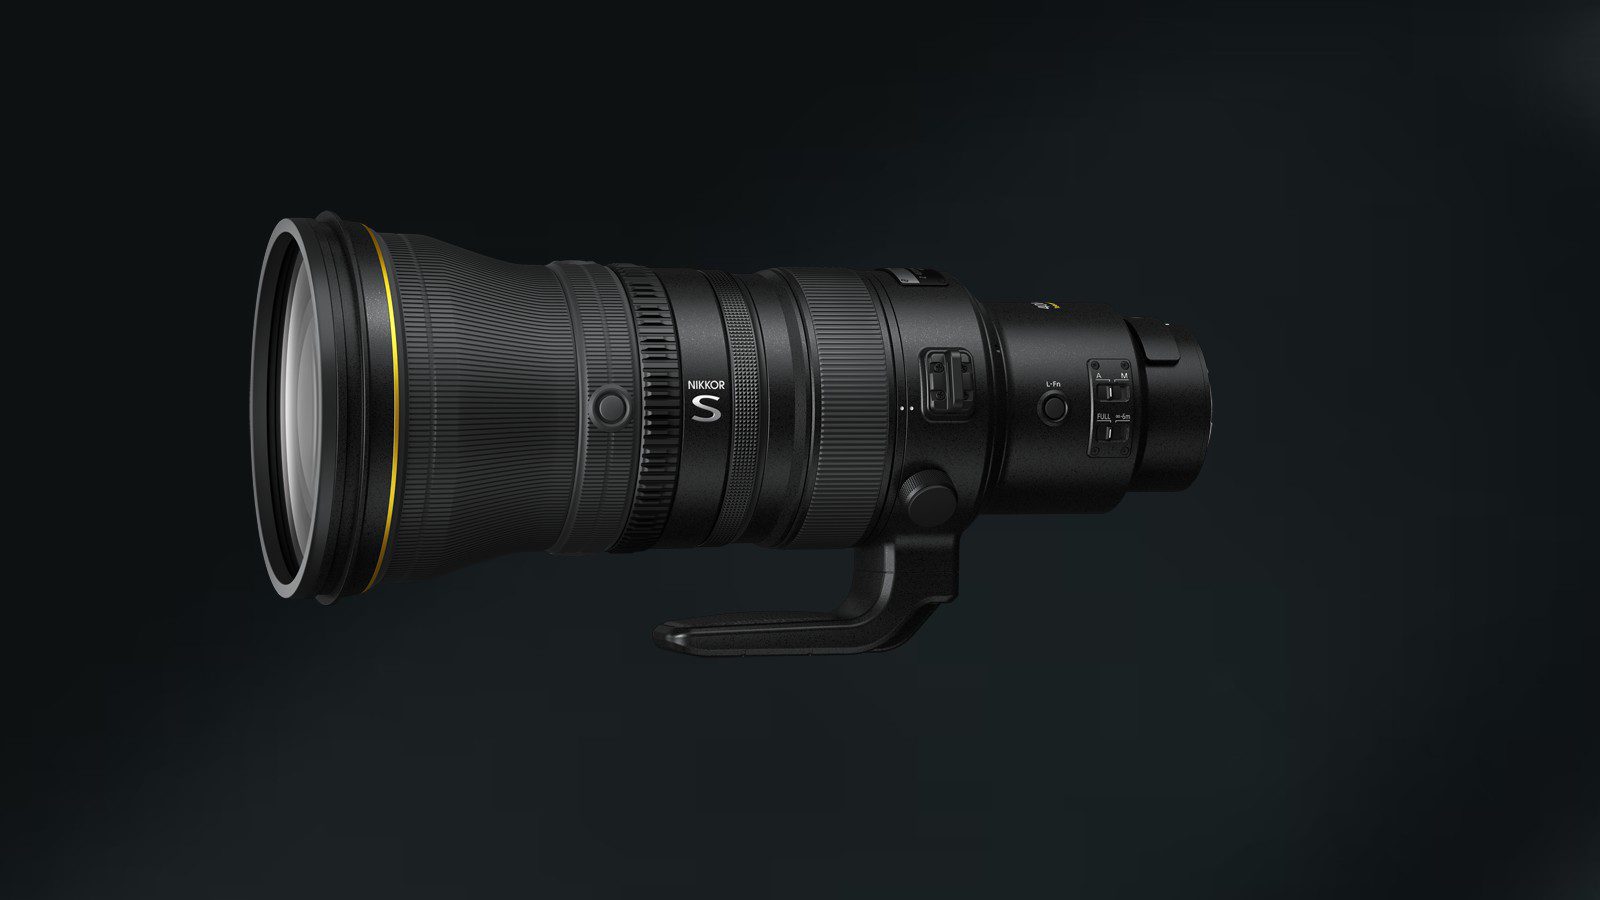 Nikon выпустила супертелеобъектив Z 400mm F/2.8 по цене 99 999 юаней